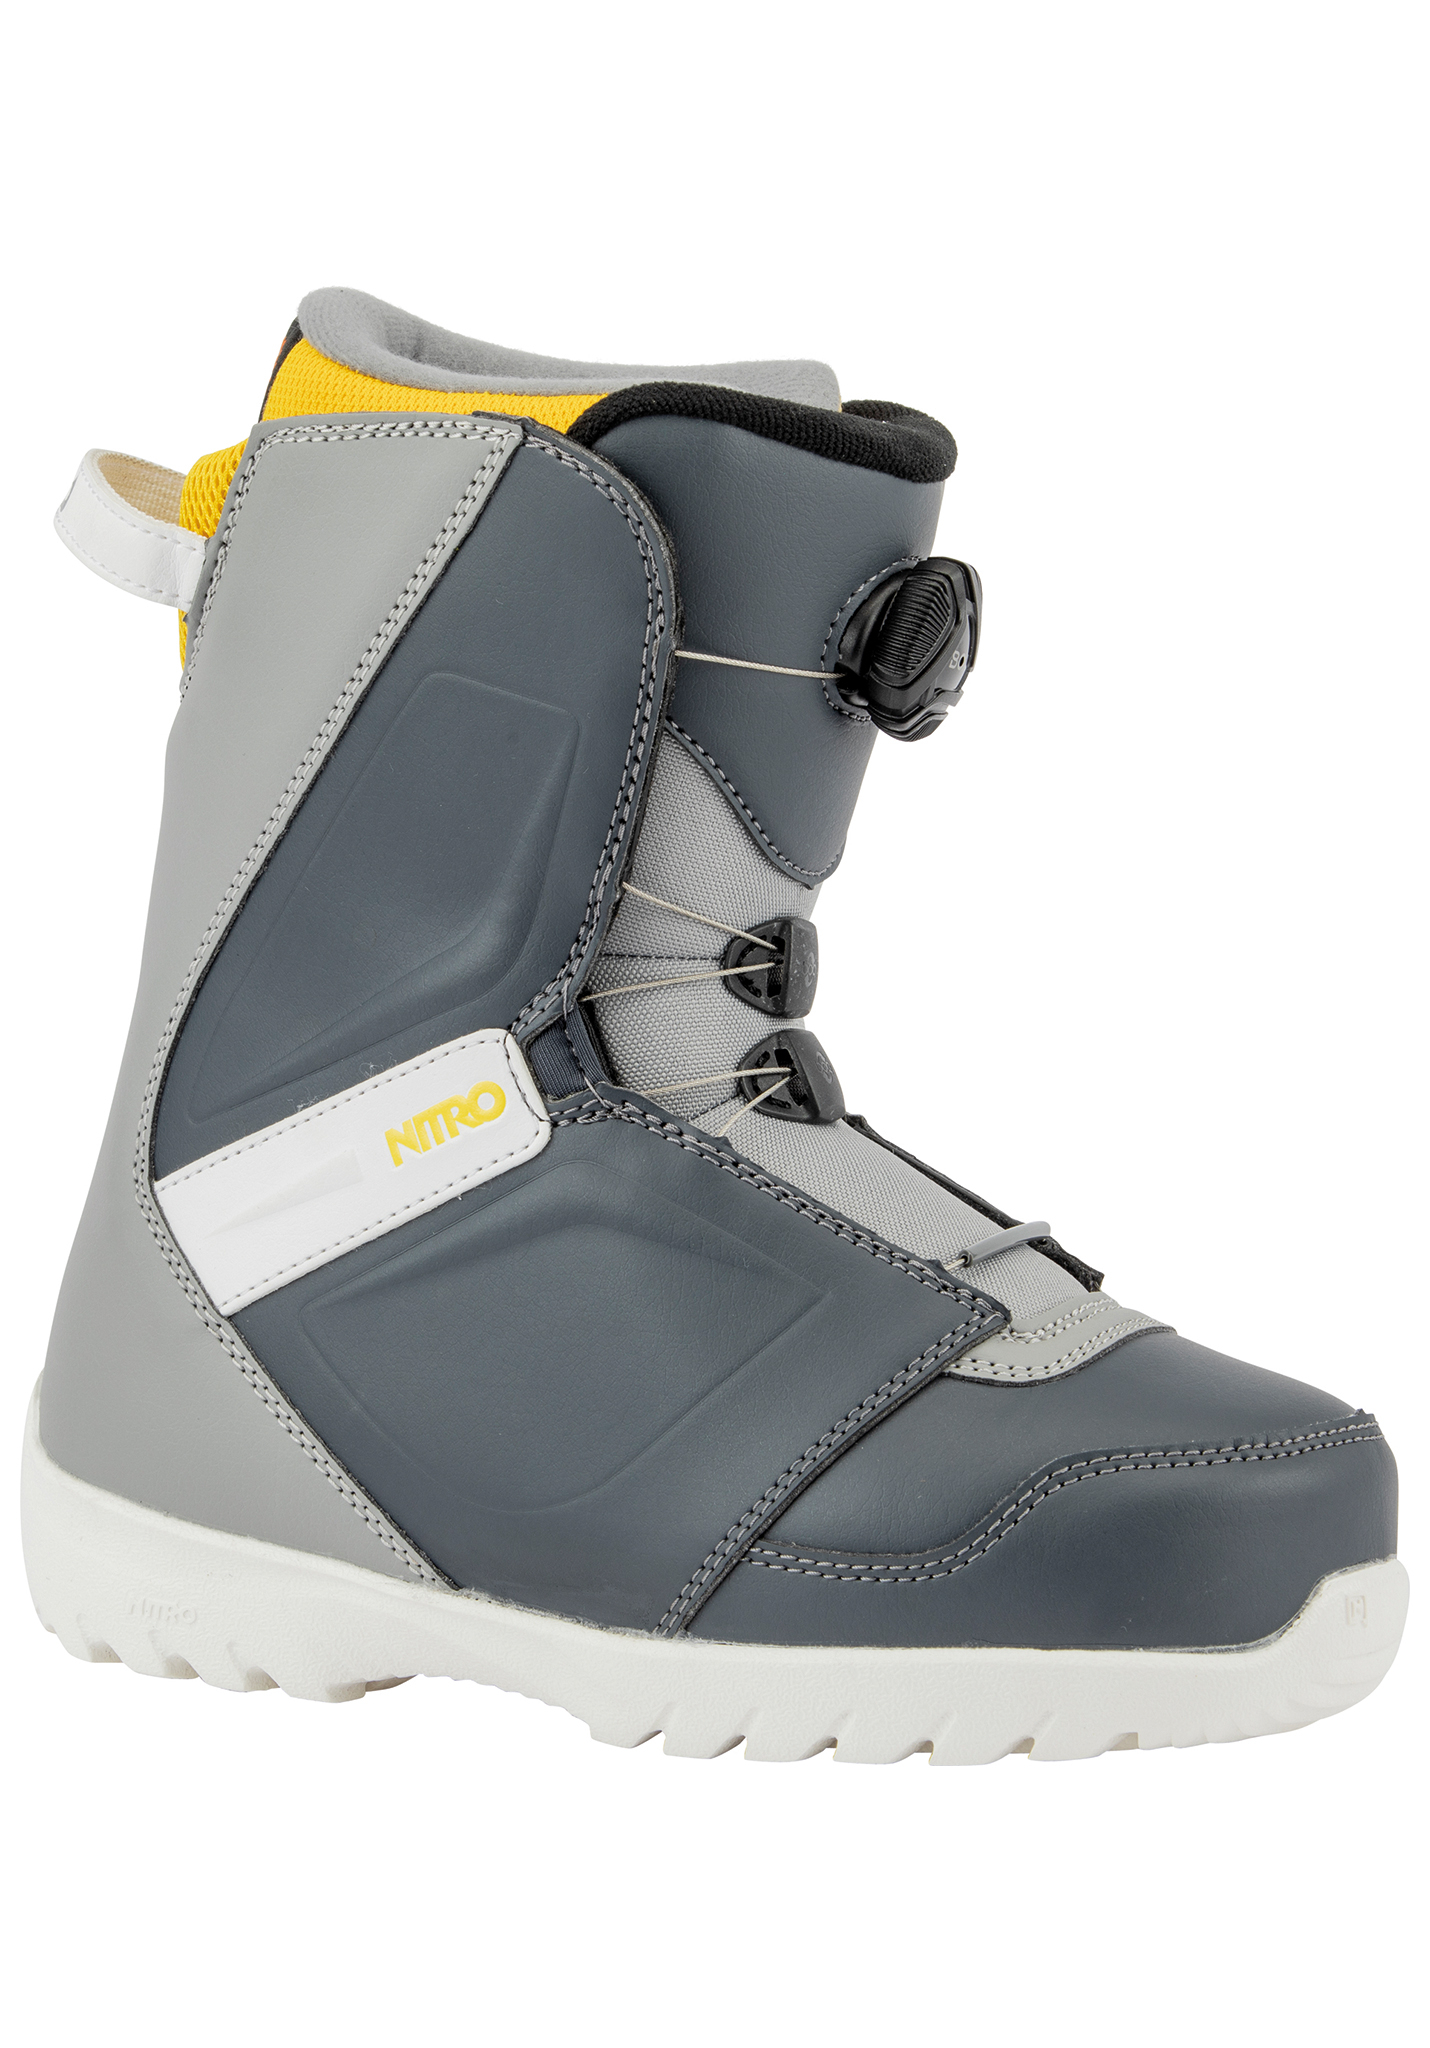 Nitro Droid Boa All Mountain Snowboard Boots marine bl-grey-yell 34